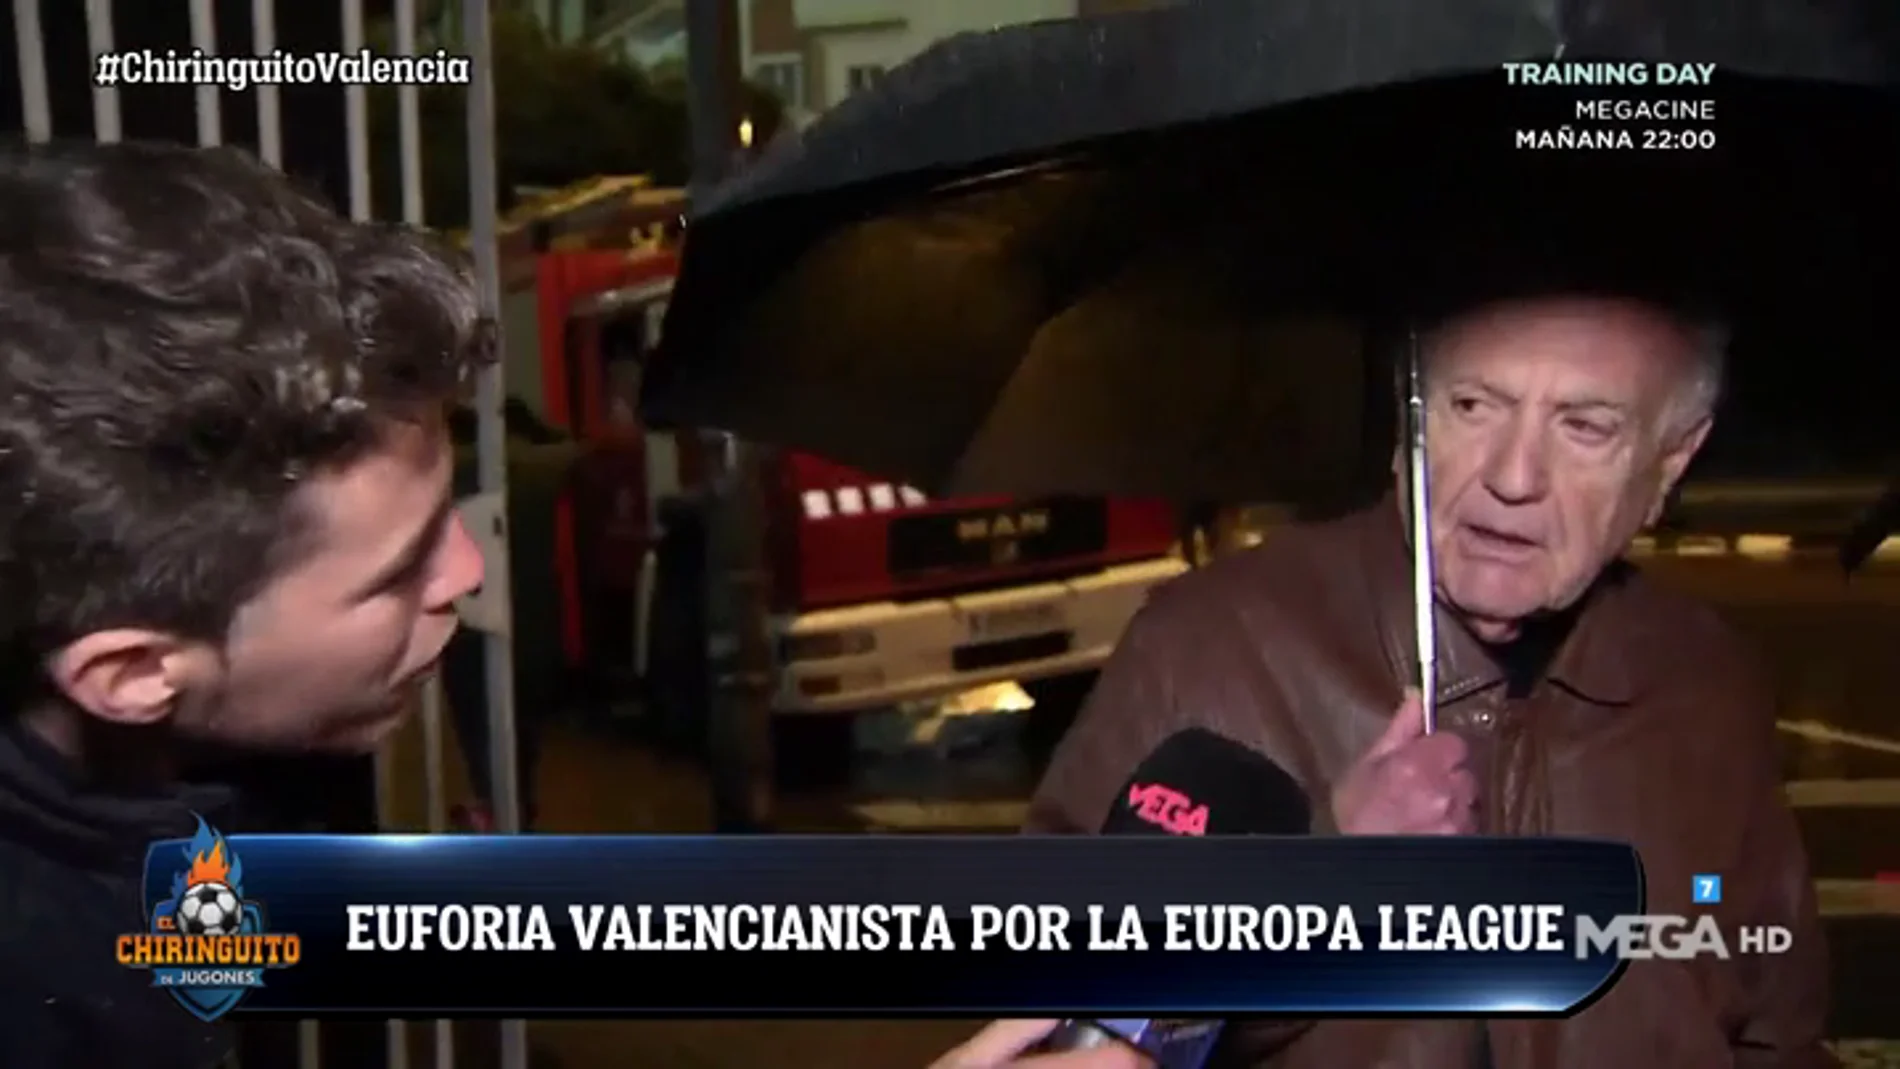 La afición del Valencia, confiada tras eliminar al Villarreal en Europa League